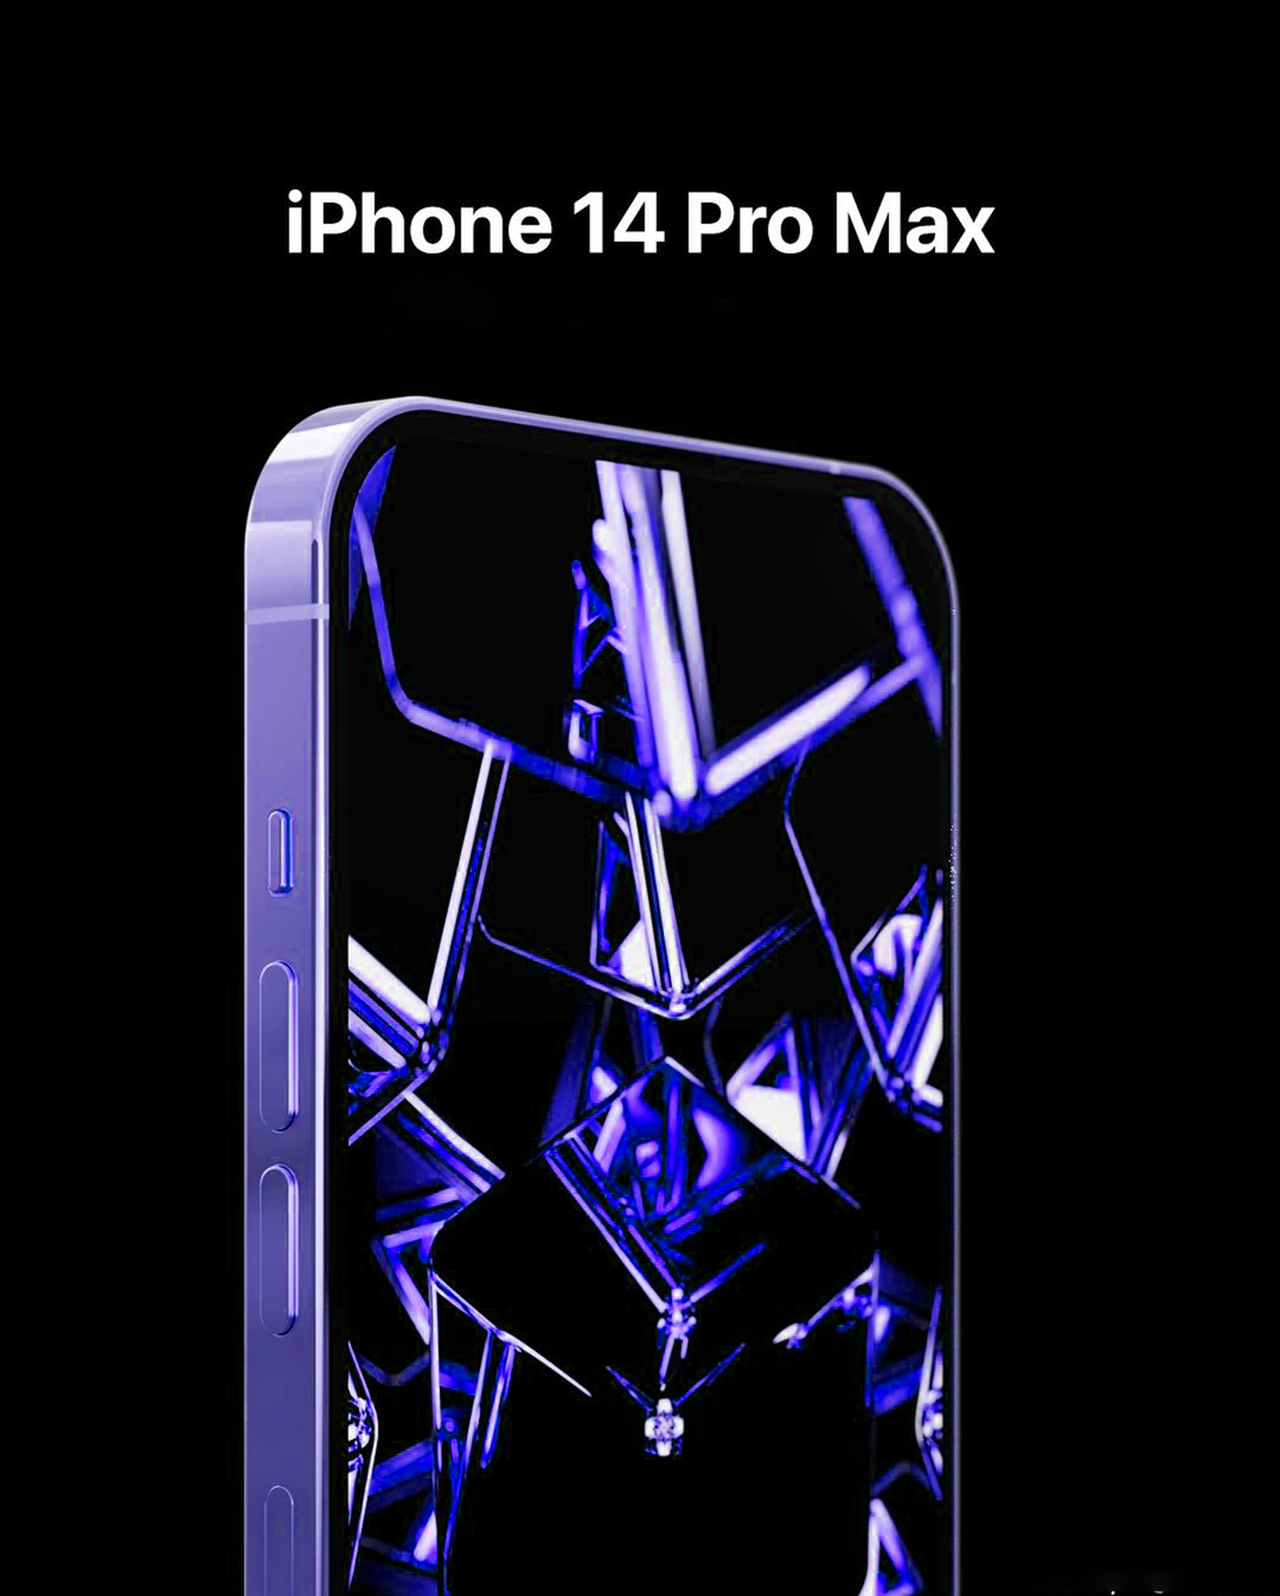 iPhone 14 Pro Max màu Xanh Neon là điện thoại hoàn hảo cho những ai yêu thích sự hiện đại và nổi bật. Cùng chiêm ngưỡng hình ảnh đặc biệt của chiếc điện thoại này trên ảnh sắc nét, màu sắc tươi sáng và đầy sức hút.